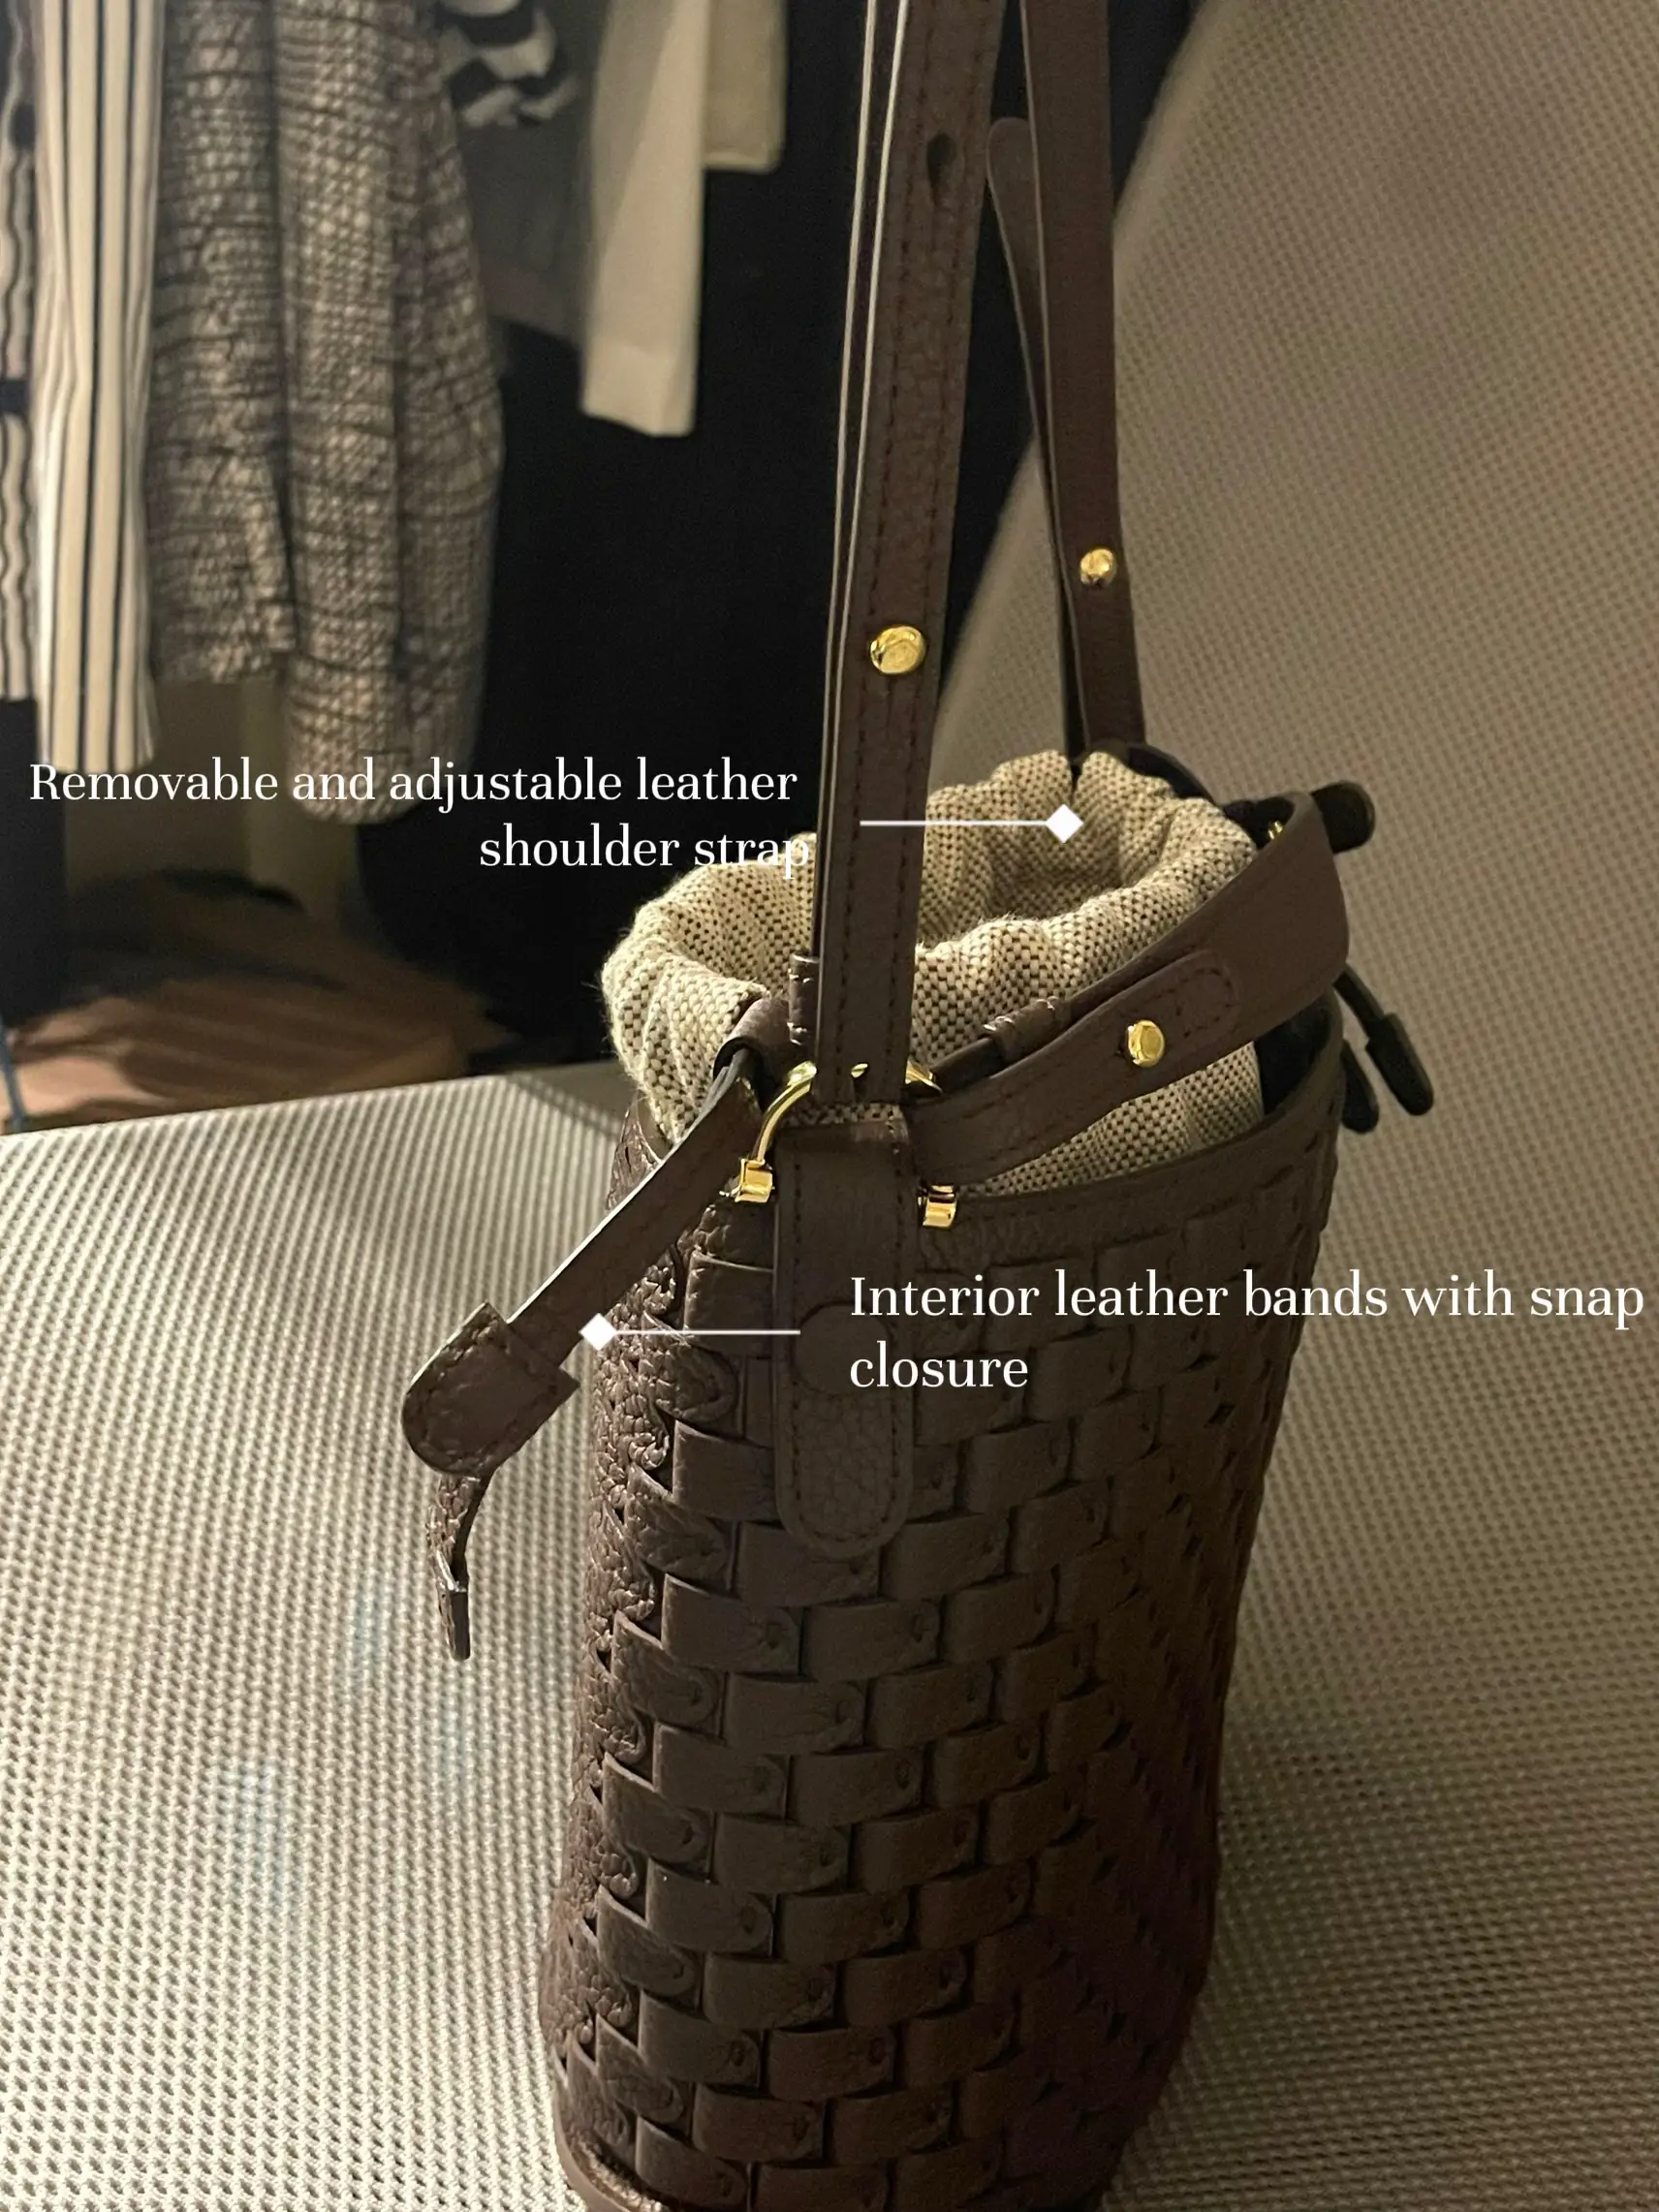 REVIEW] Prada Small Saffiano Leather Double Prada Bag - BF : r